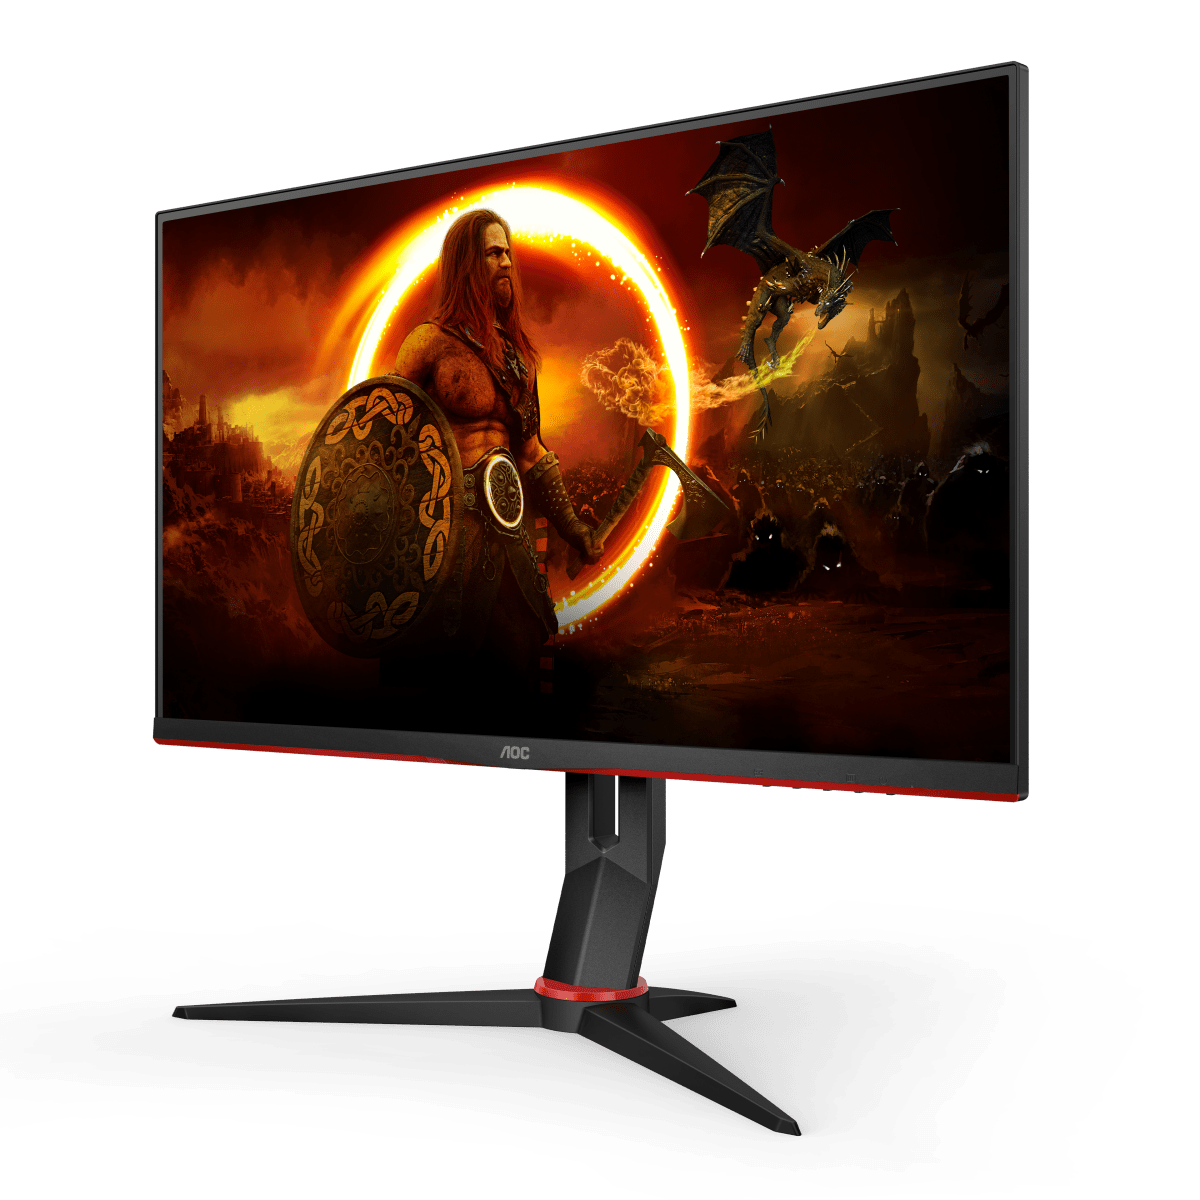 AOC presenta su nueva gama de monitores AGON G2 de hasta 165Hz - Los monitores gaming modelo G2 de AGON by AOC presenta una nueva gama con paneles IPS más rápidos.